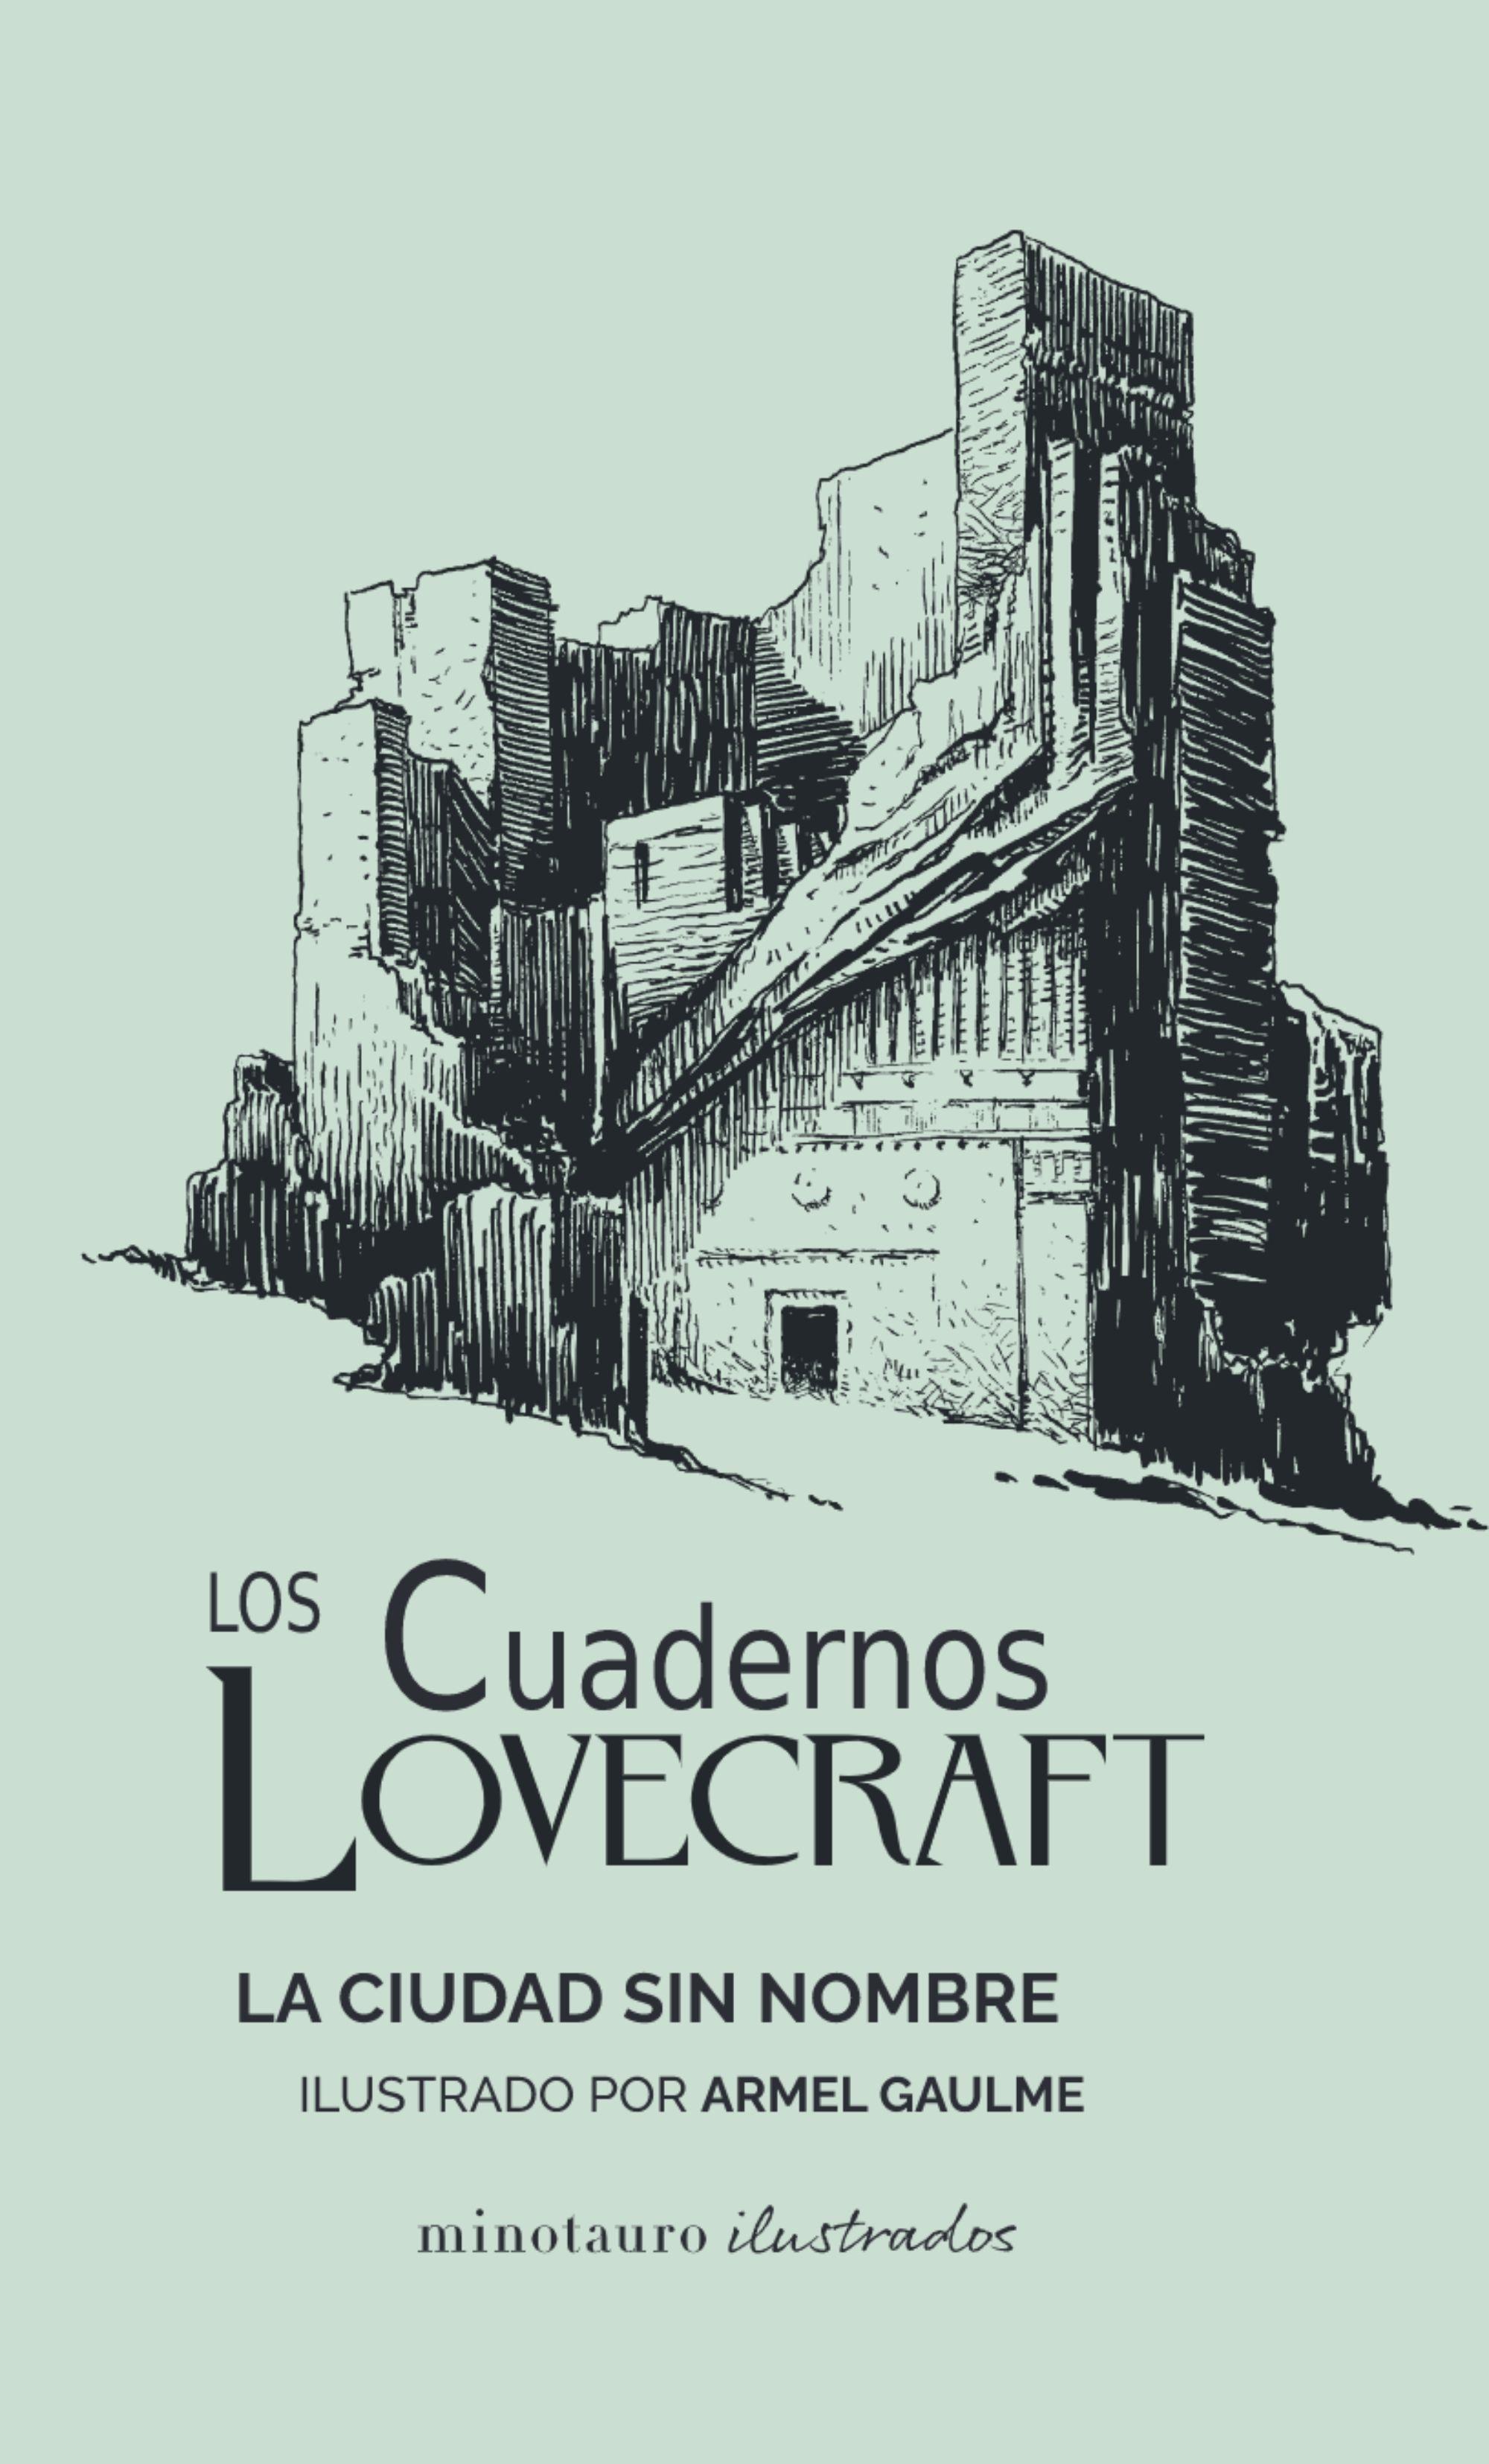 Cuadernos Lovecraft, Los  nº 2. La ciudad sin nombre